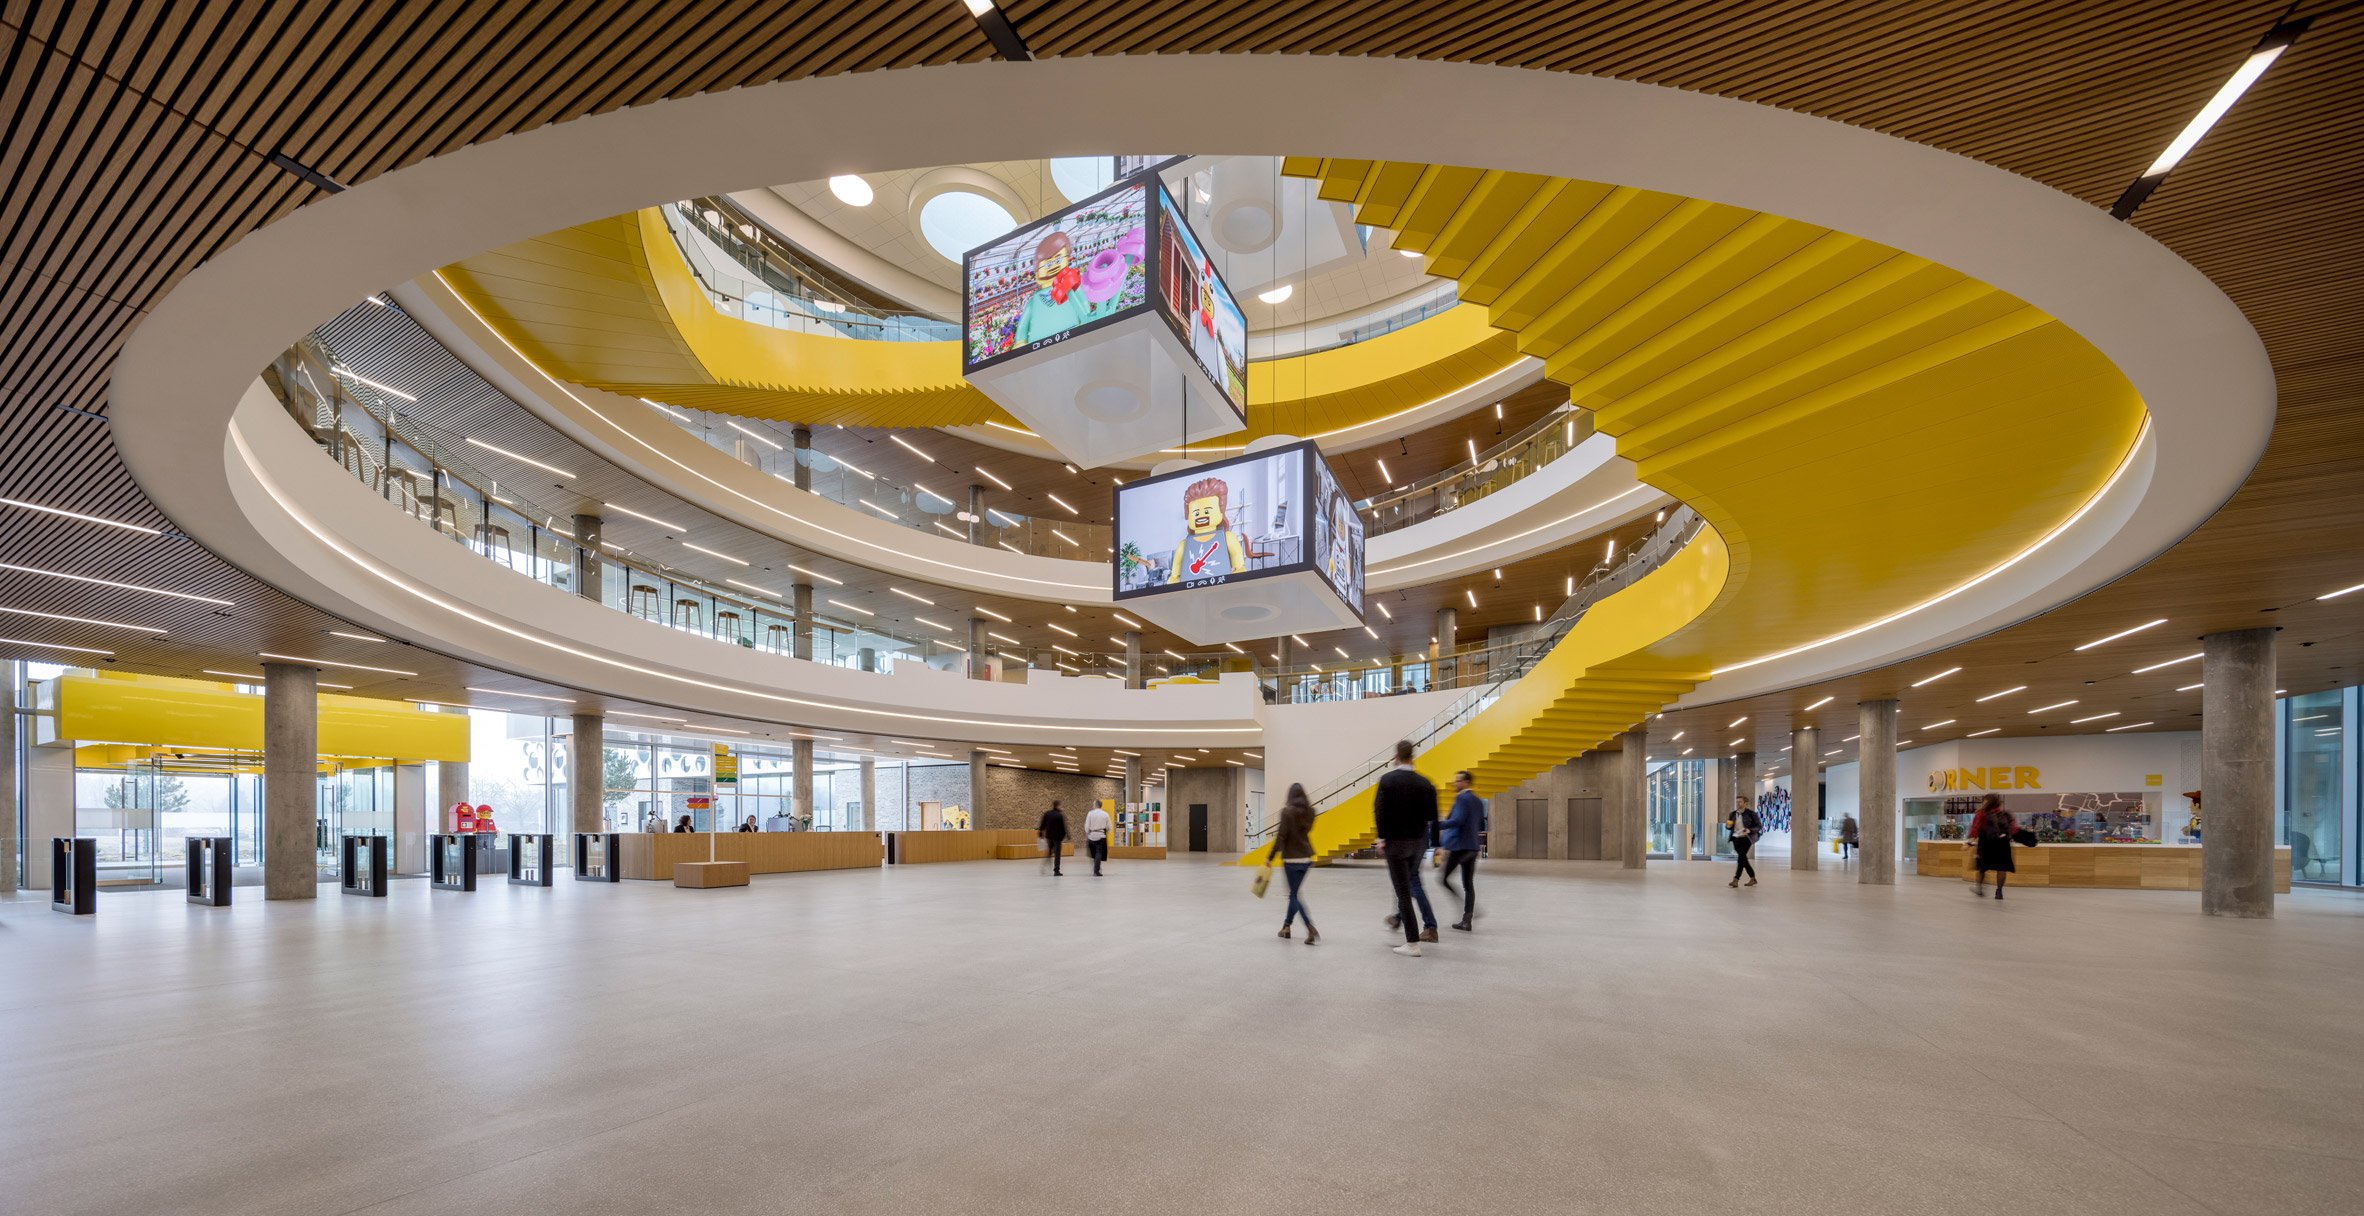 CF Møller Architects arranges Lego campus around circular